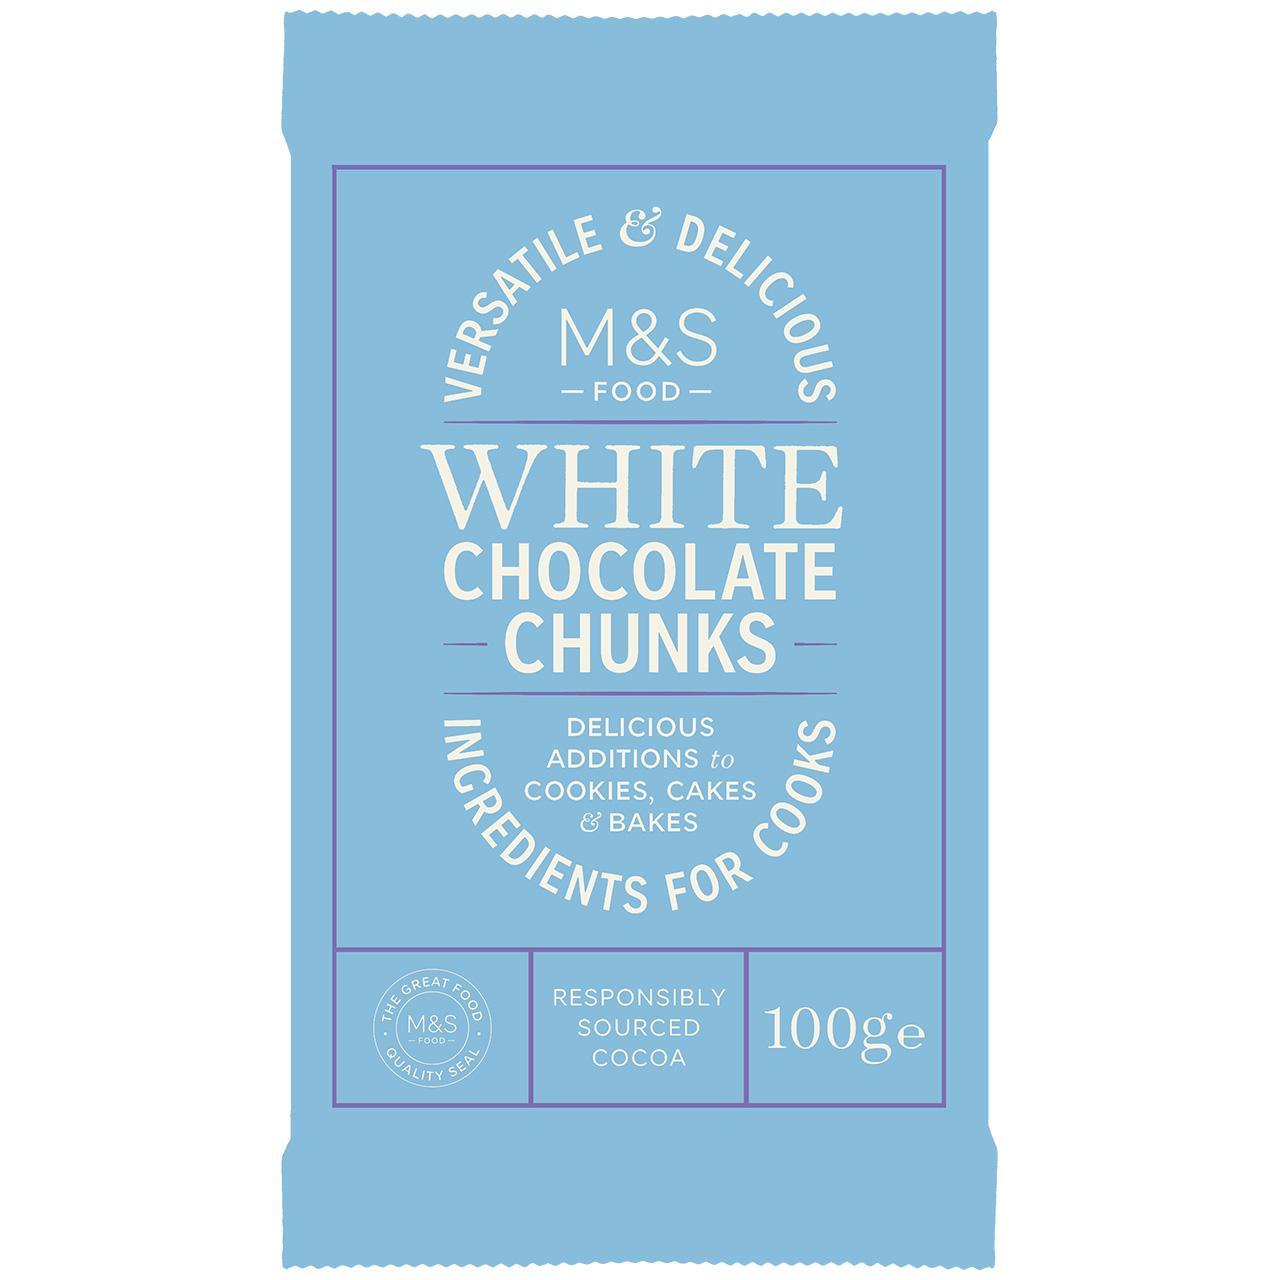 M&S White Chocolate Chunks